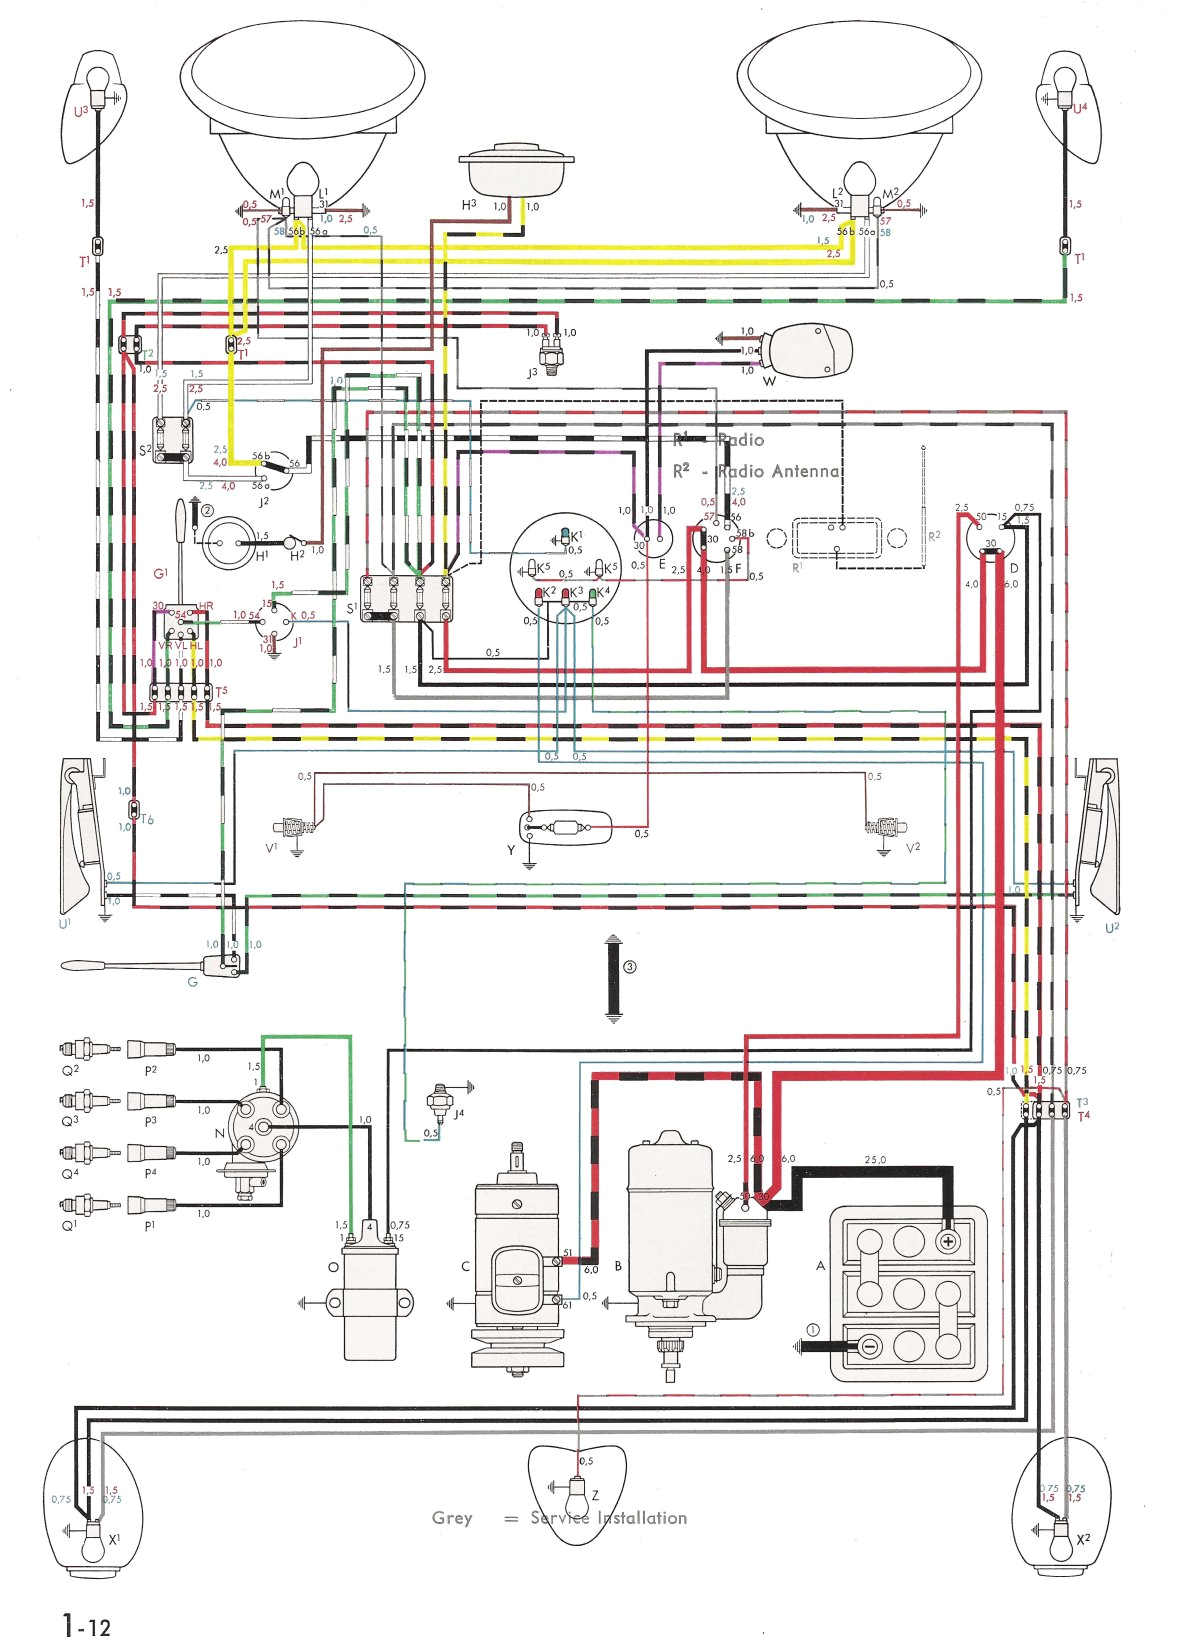 thesamba com type 1 wiring diagrams 1973 volkswagen beetle wiring diagram 1973 beetle wiring diagram